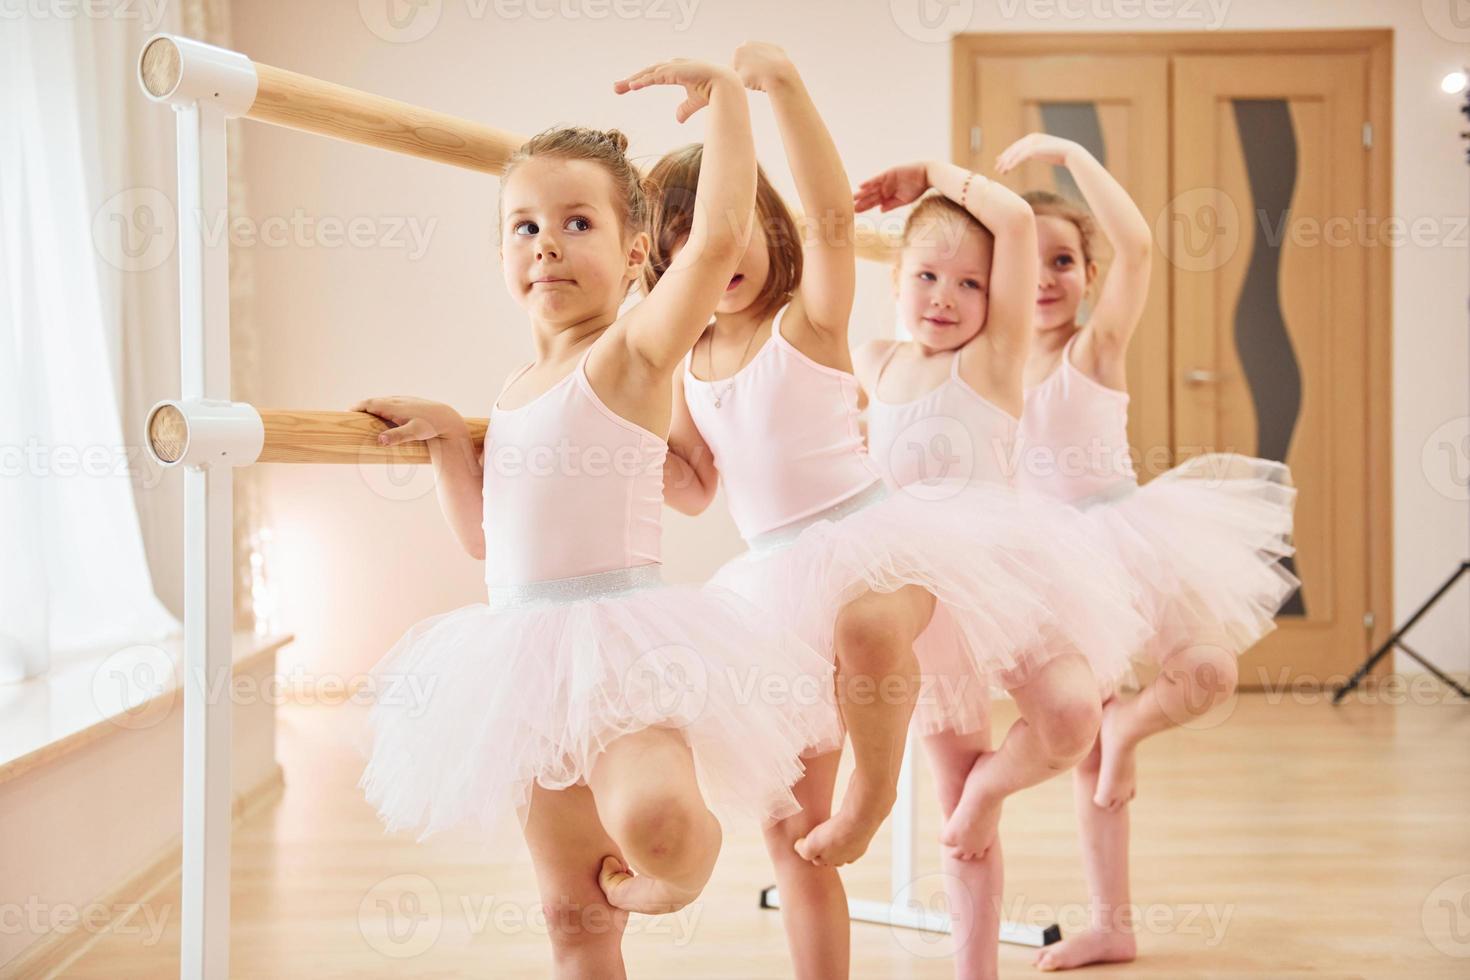 weinig ballerina's voorbereidingen treffen voor prestatie door beoefenen dans beweegt foto